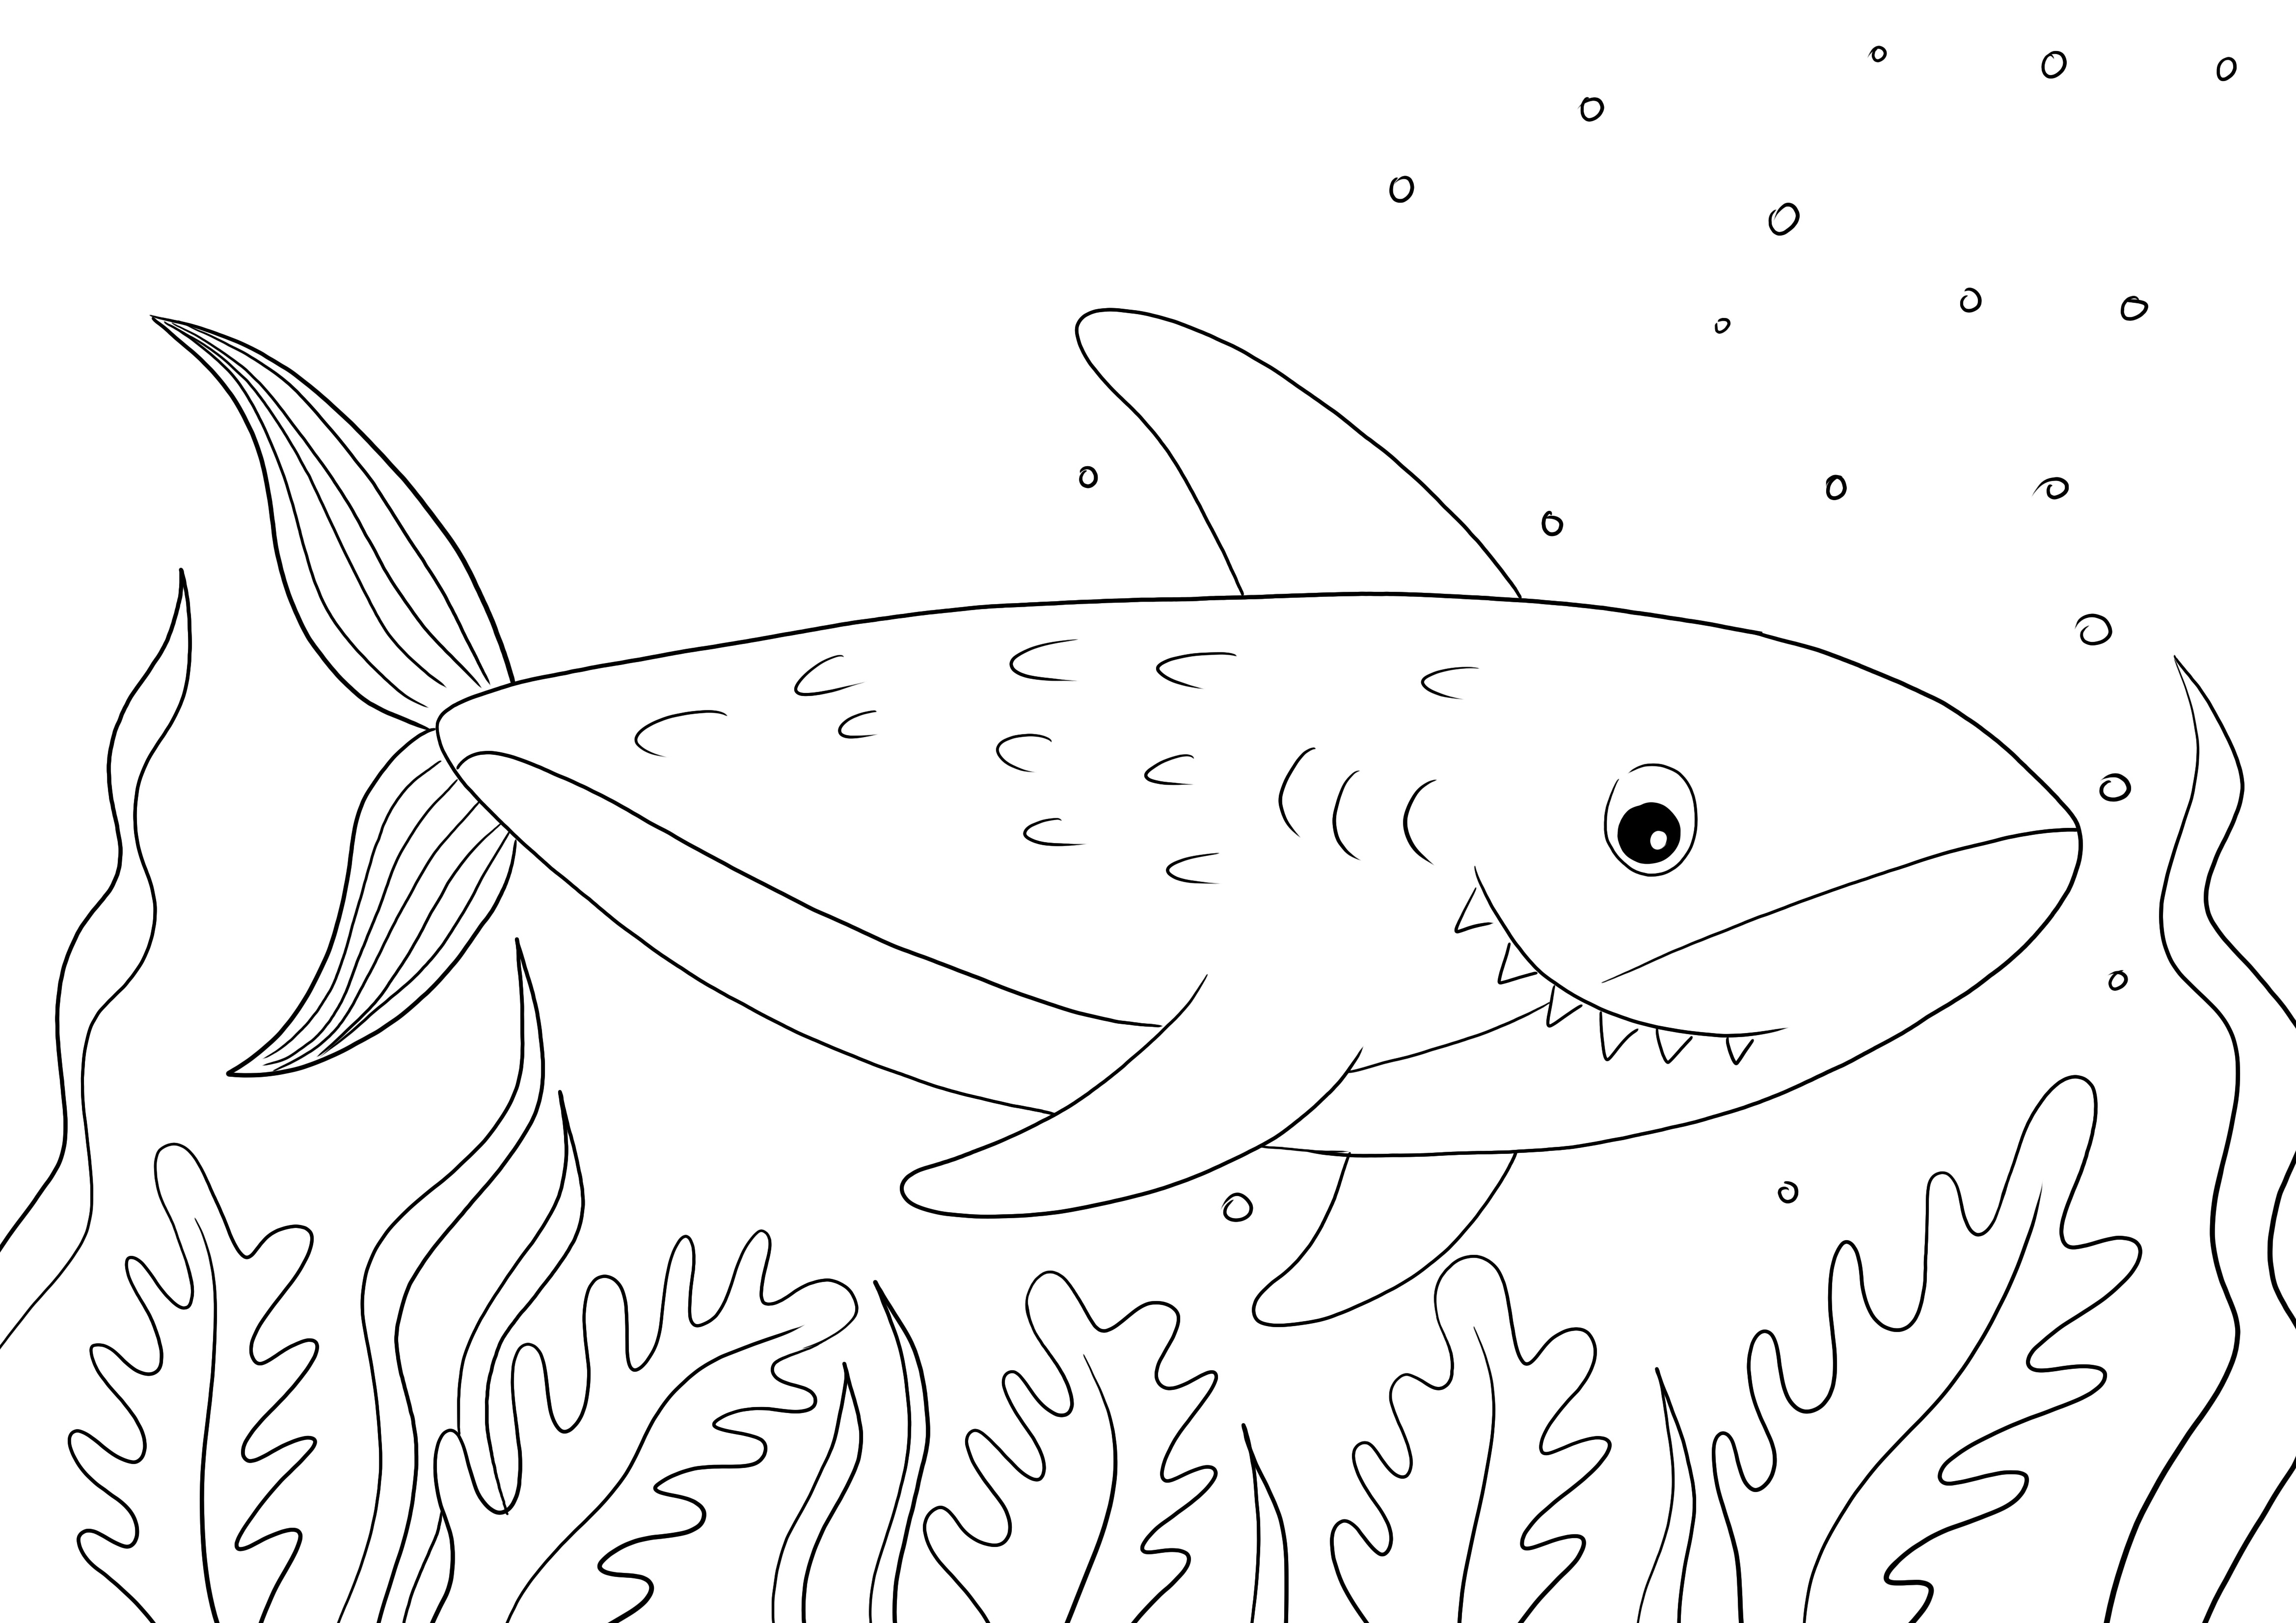 Impressão fácil e gratuita de uma página de coloração de tubarão para as crianças aprenderem sobre os animais marinhos